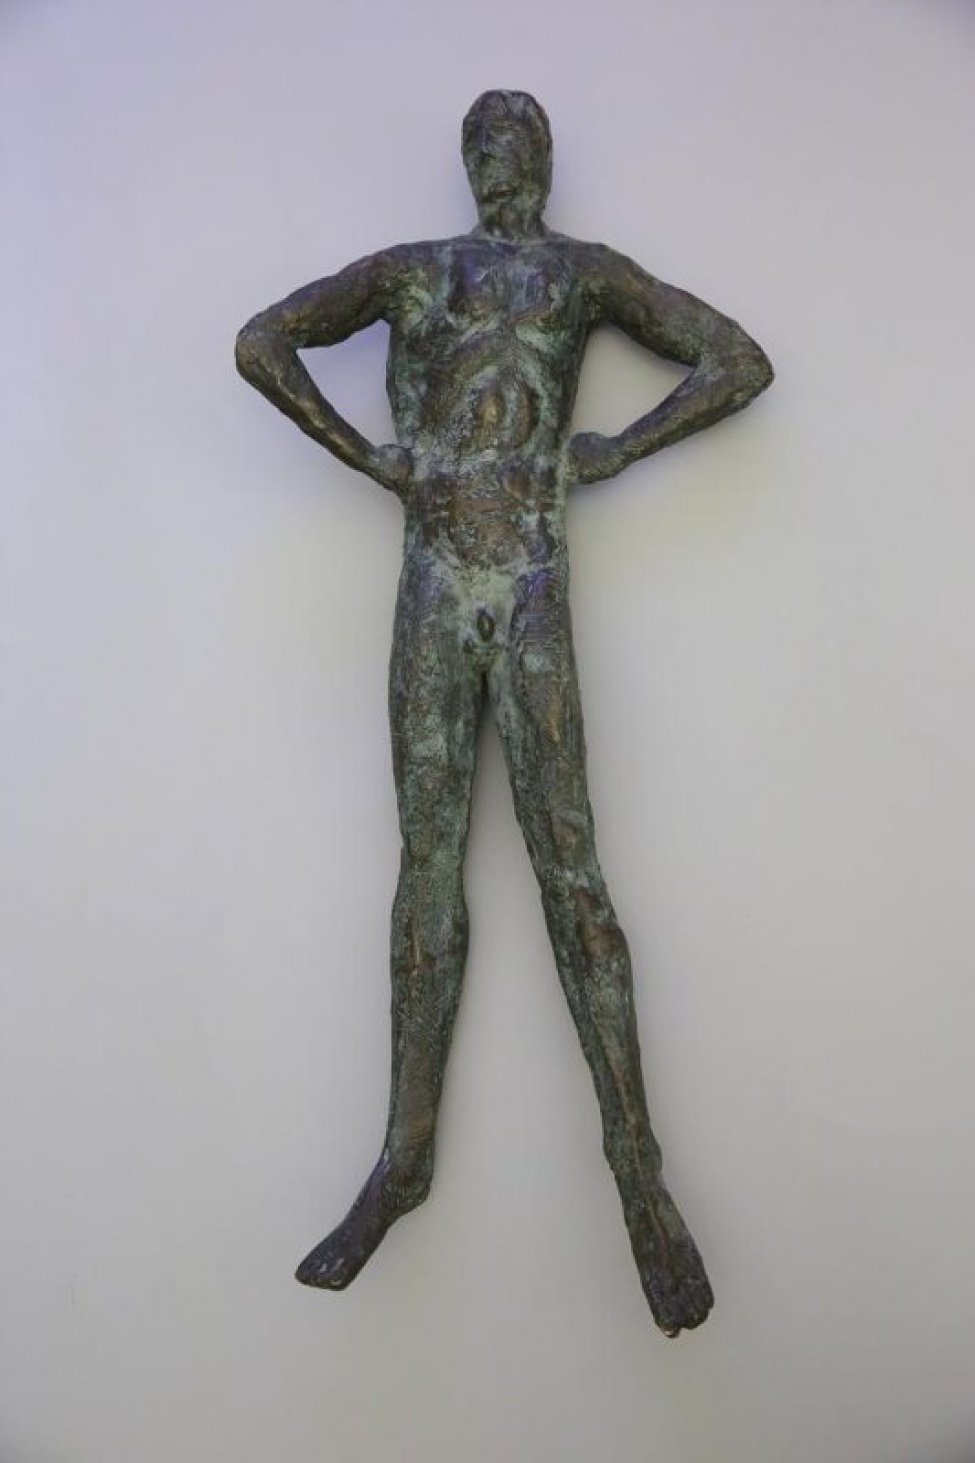 Изображена в рост обнаженная мужская фигура с согнутыми в локтях и упертыми в бока руками. Ноги раздвинуты, голова слегка повернута к правому плечу. Фактурная поверхность скульптуры-патинирована. Скульптура монтируется на болт к основной стойке.